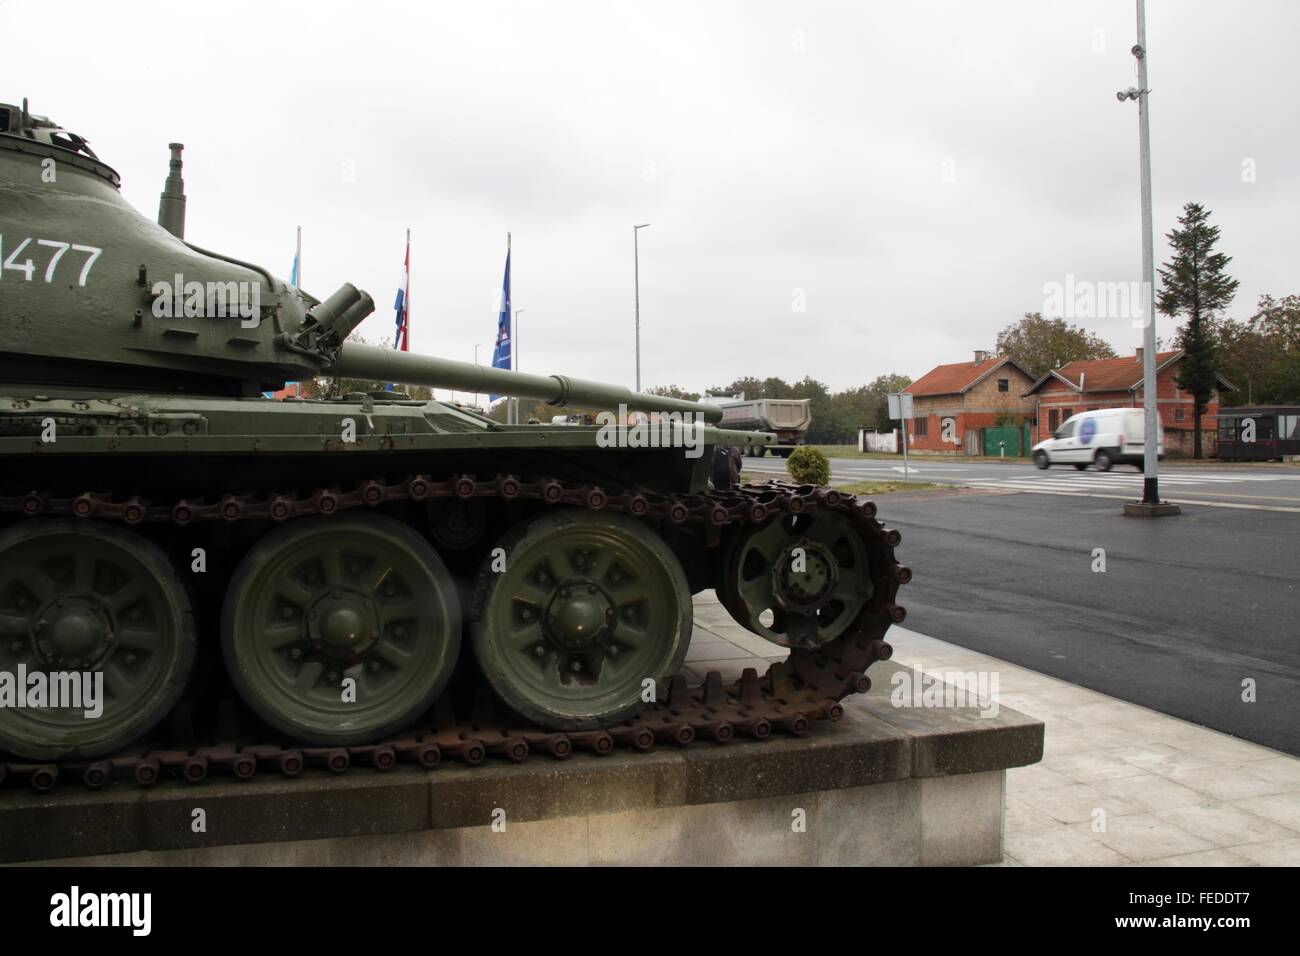 Serbatoio pesante T-80 a Vukovar, Croazia - residue dopo la guerra civile Foto Stock